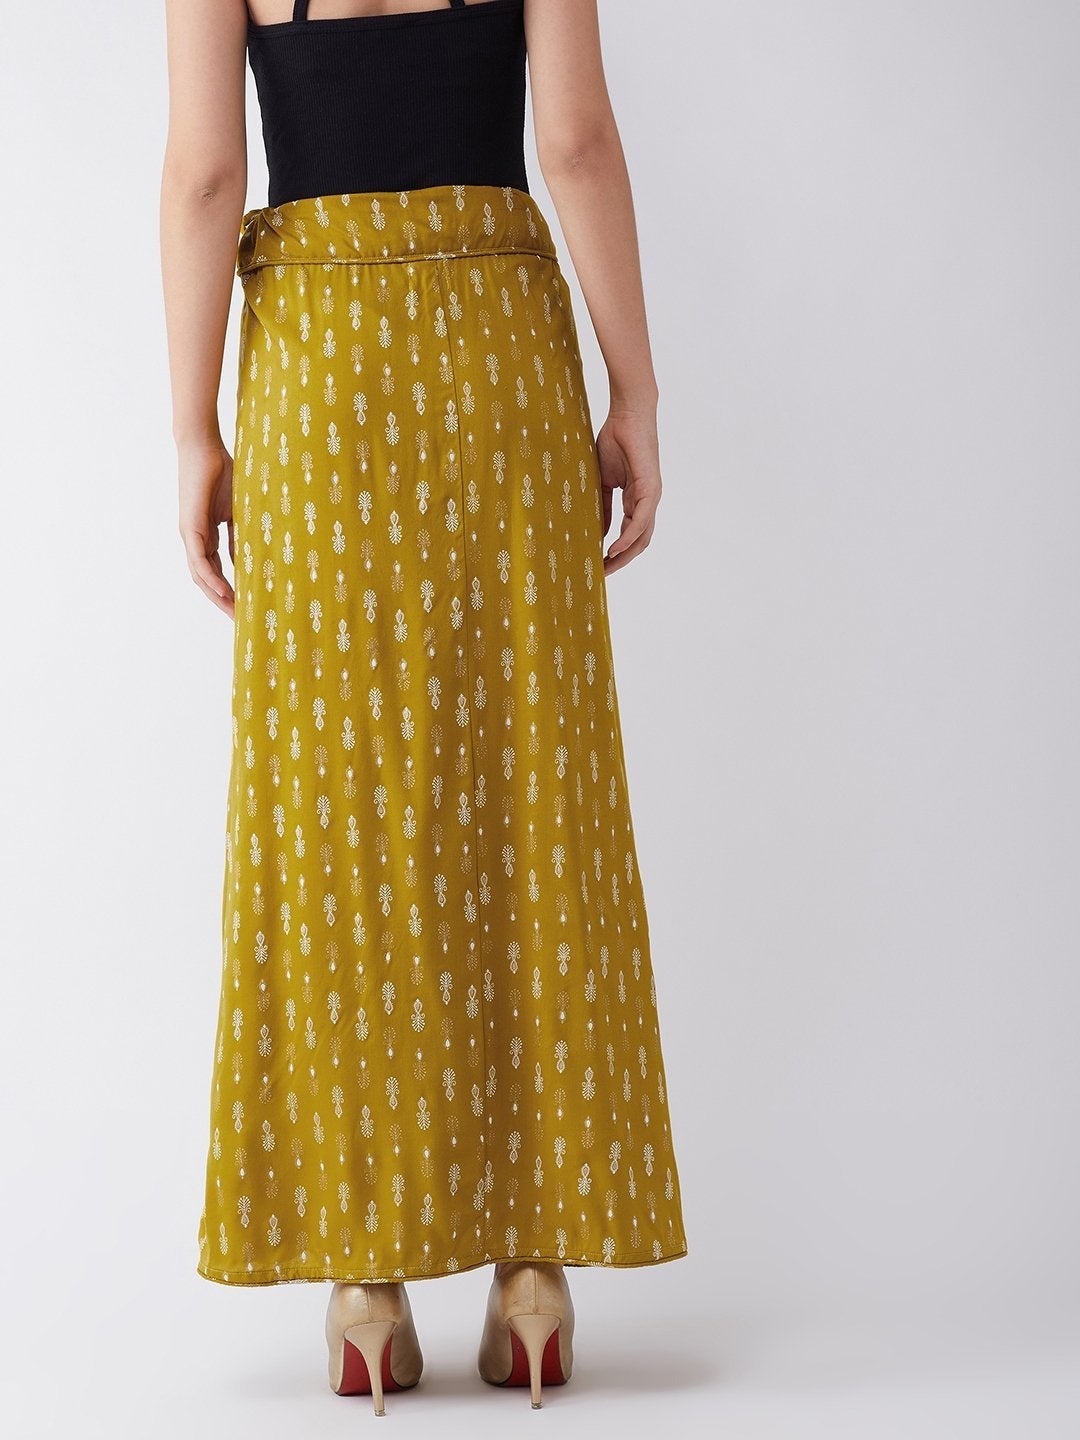 Women's Mustard White Print Skirt - InWeave